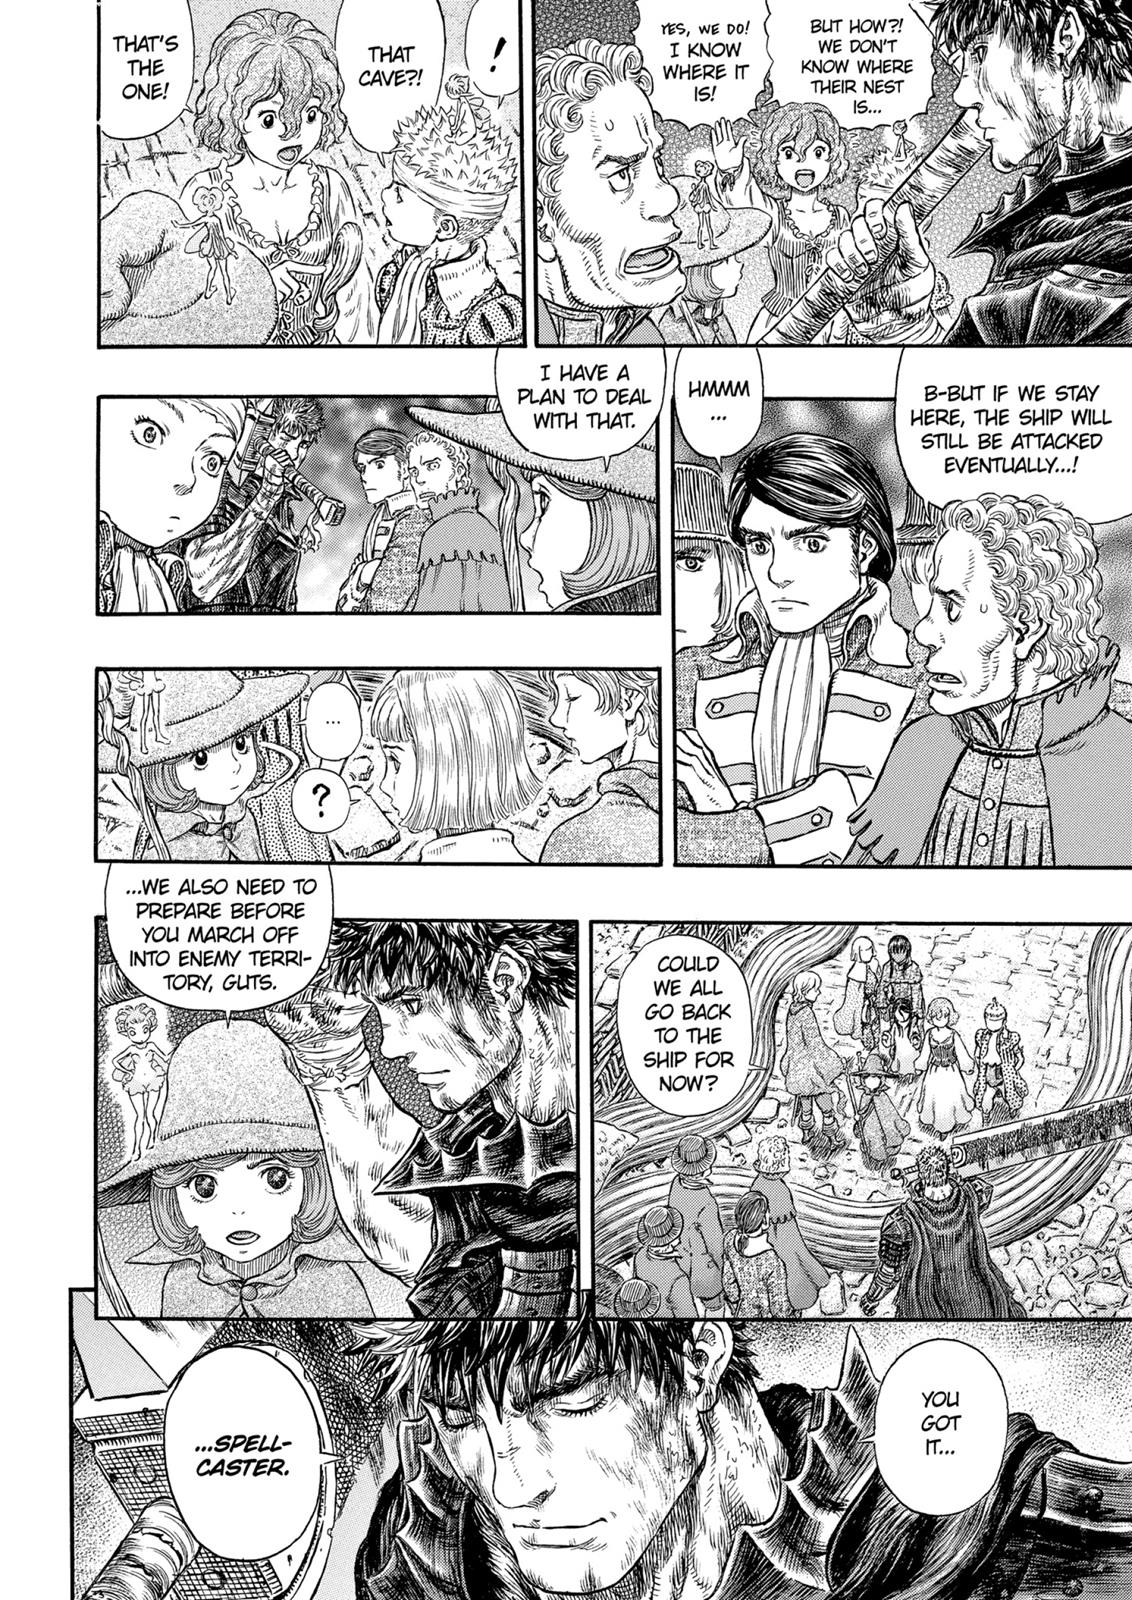 Berserk Manga Chapter 317 image 17